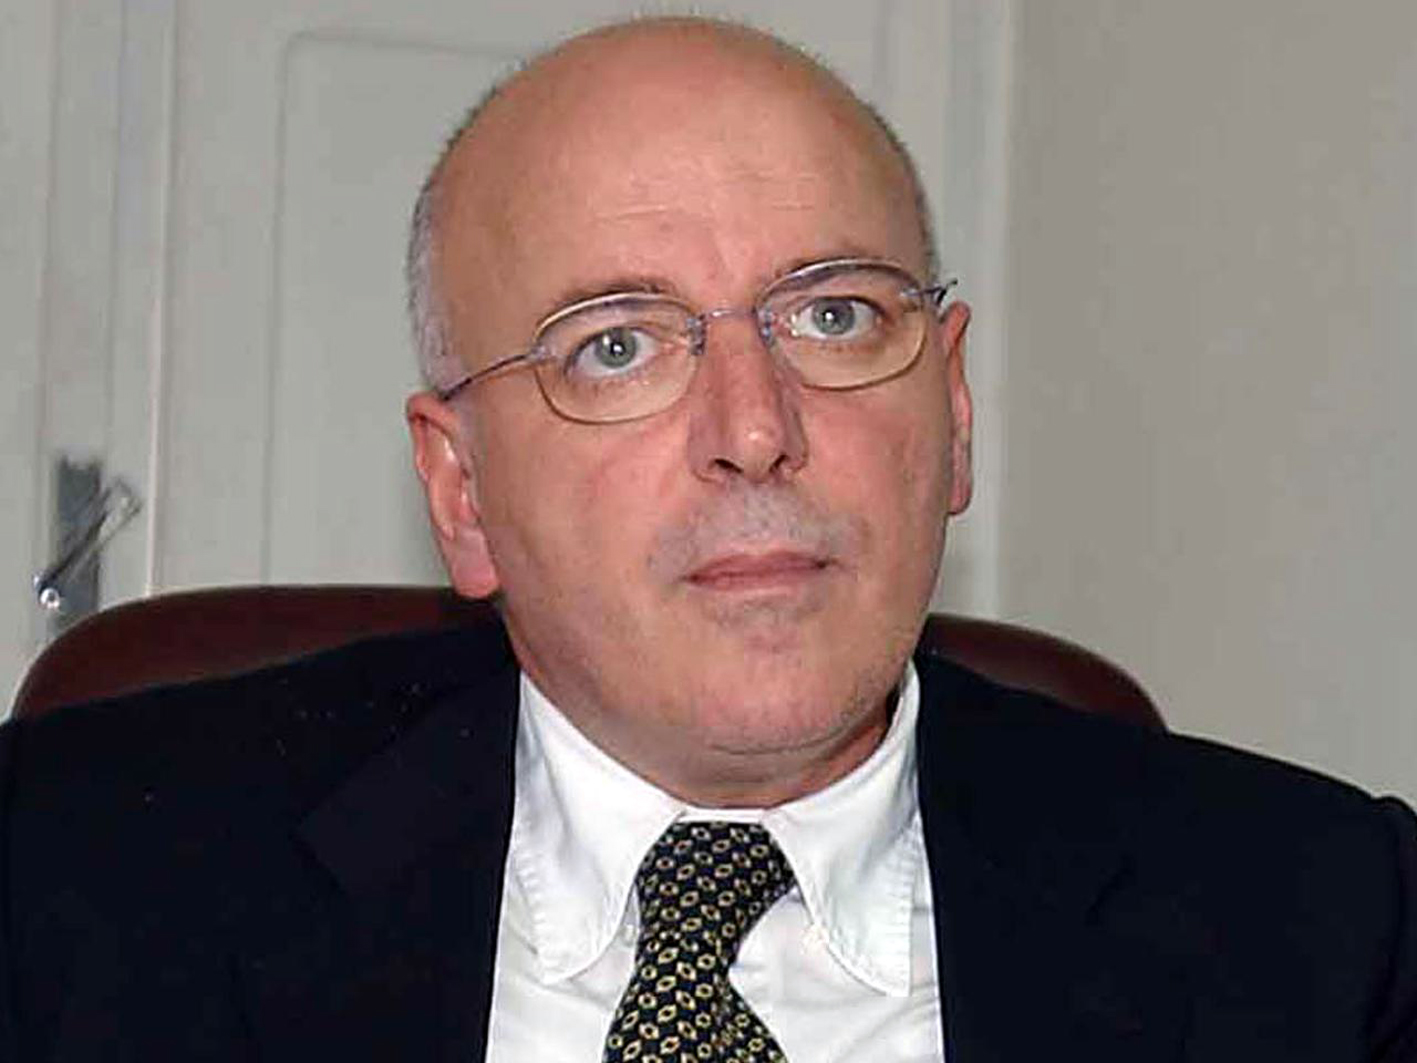 Il presidente della Giunta regionale della Calabria, Mario Oliverio